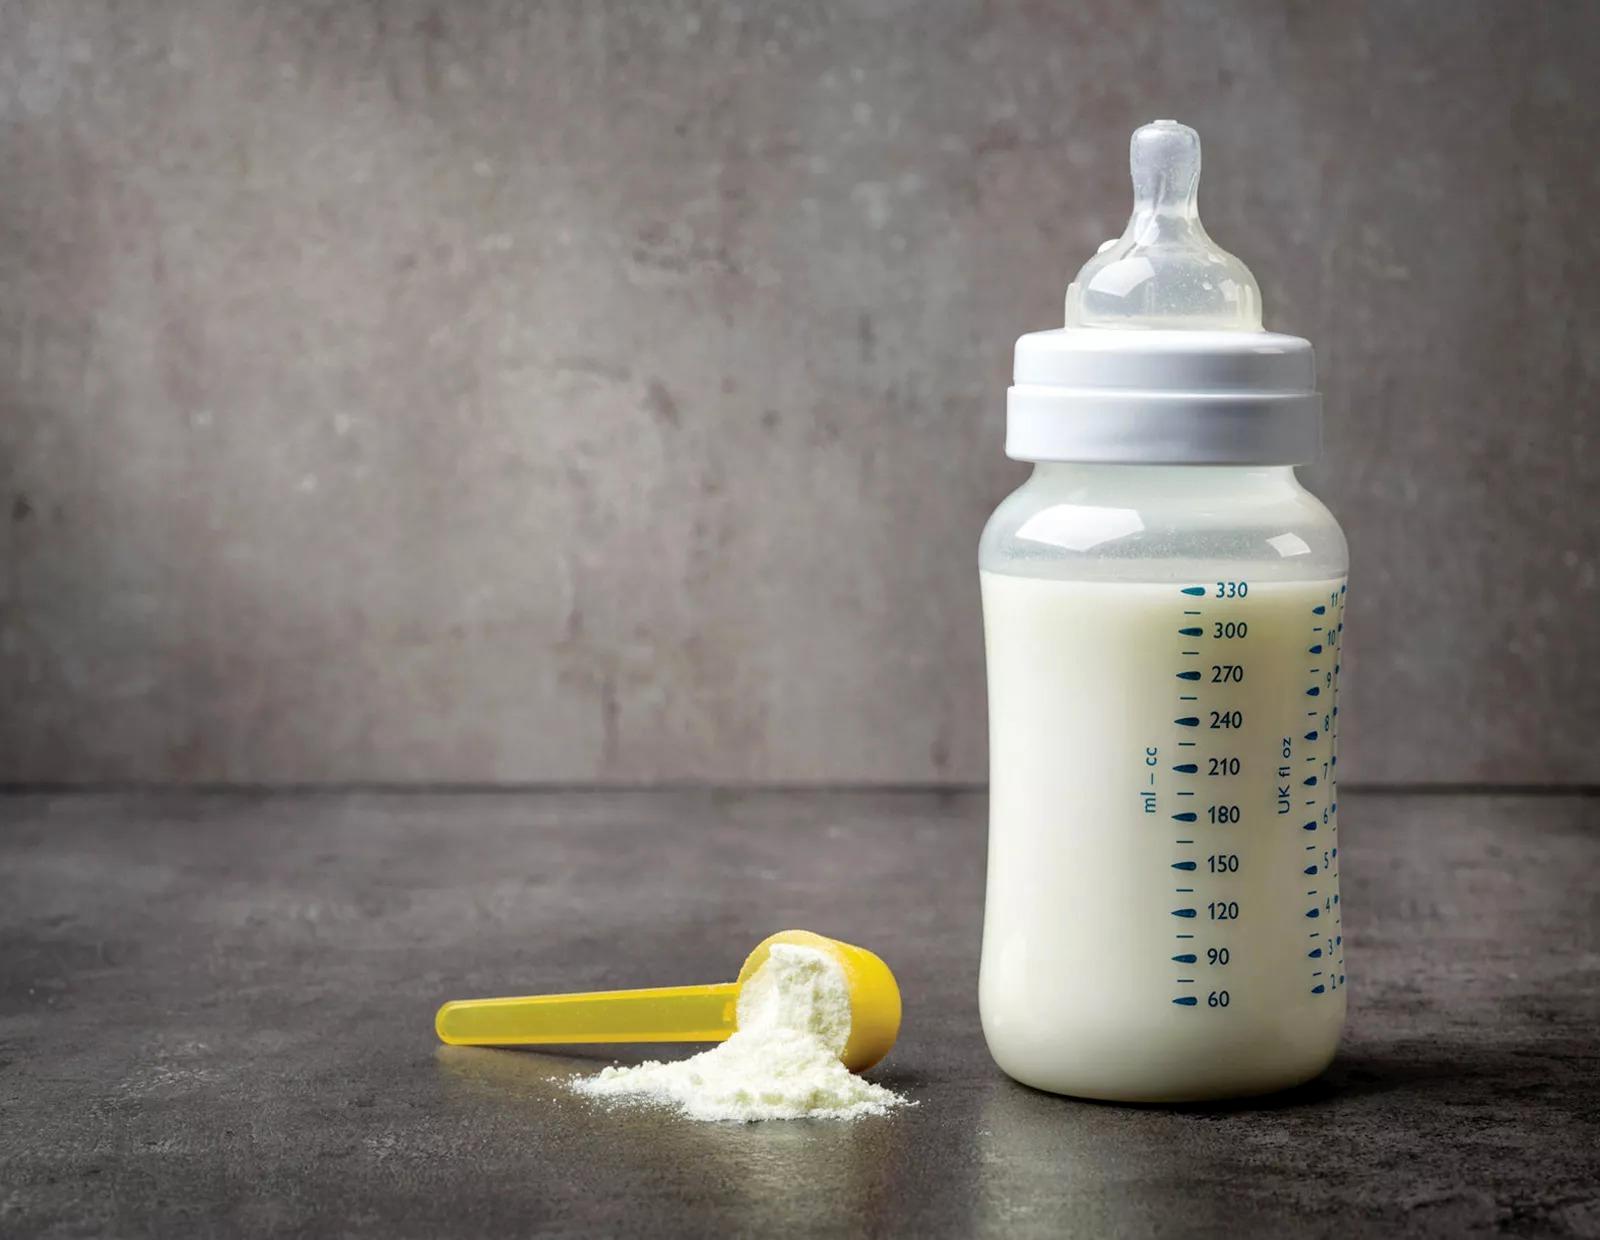 فروش شیر خشک با کد ملی تایید شد
